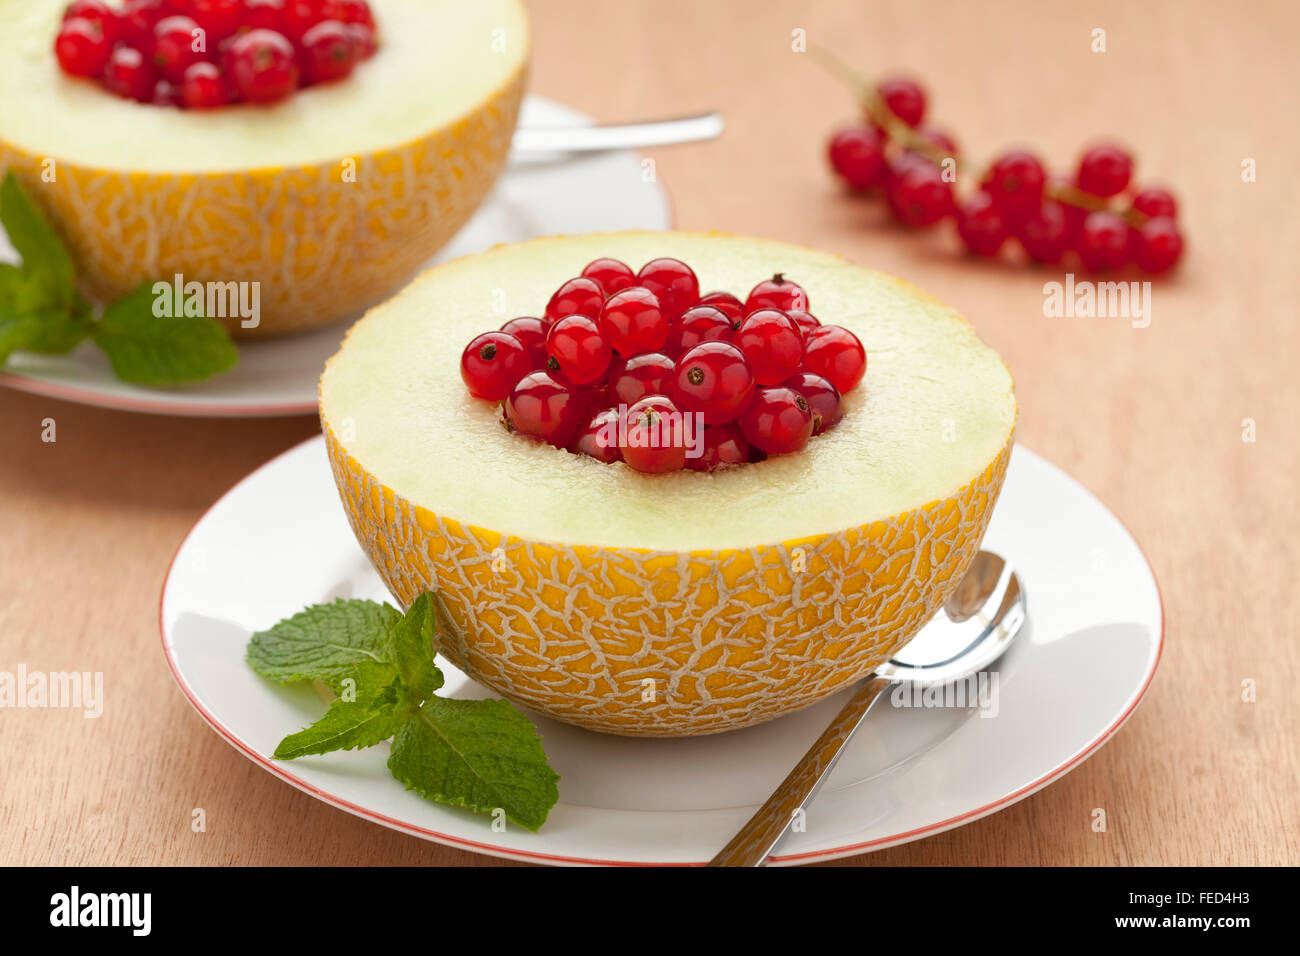 Melon riempito di ribes rosso per il dessert Foto Stock